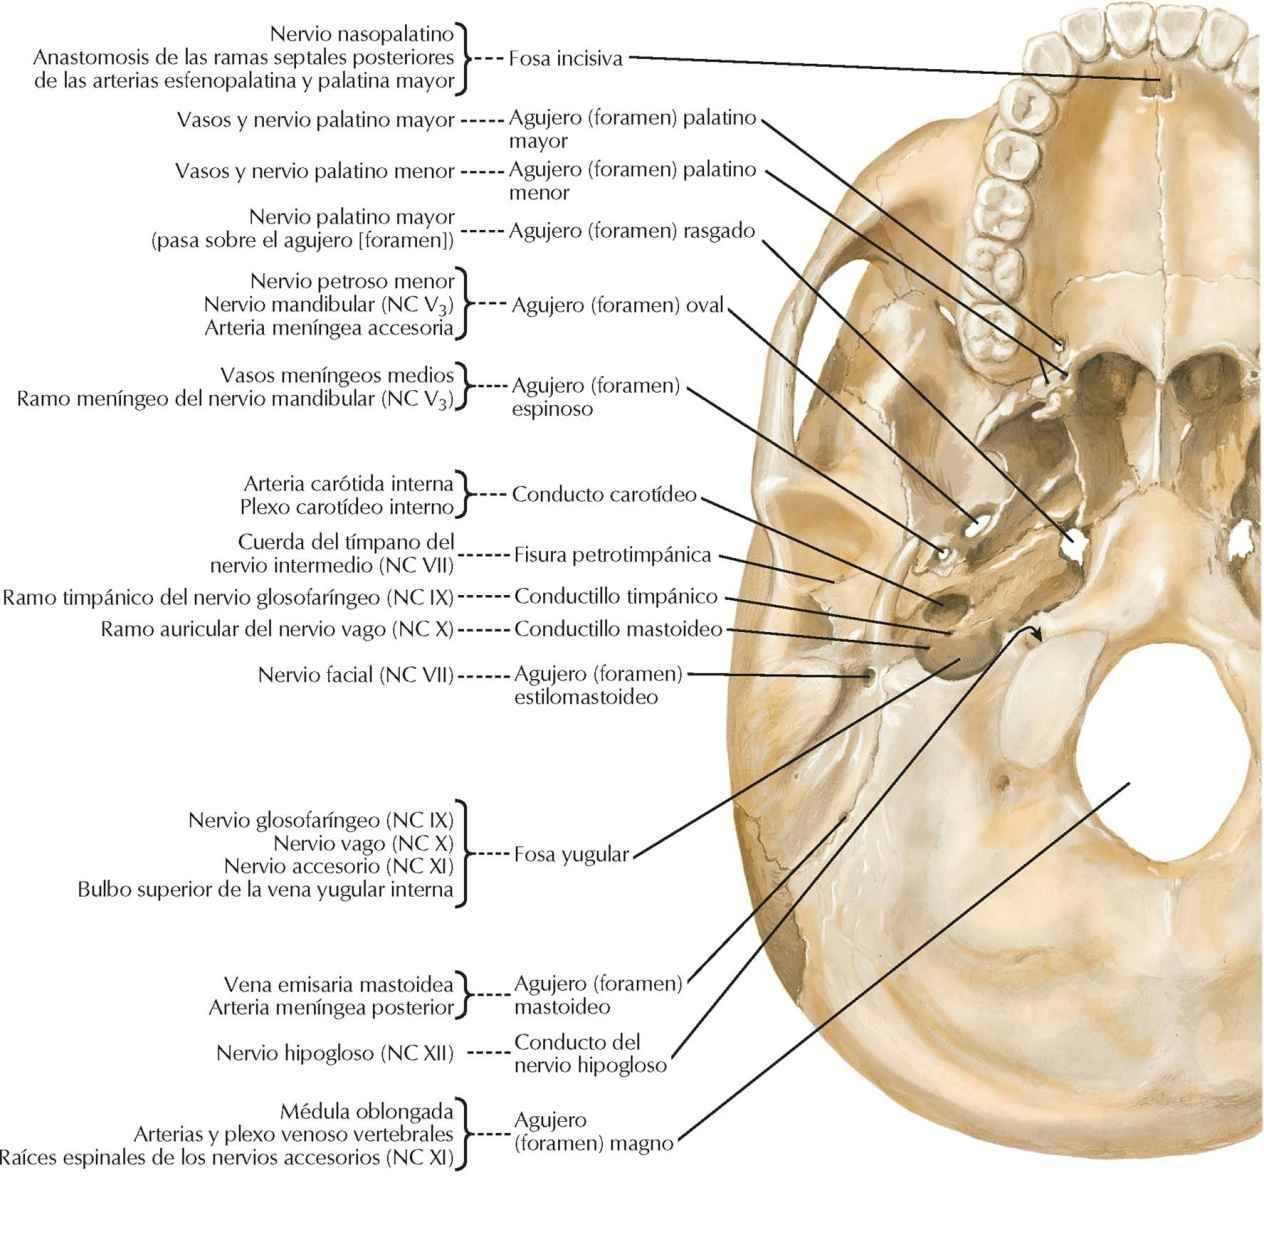 Orificios y conductos de la base del
cráneo: visión inferior.